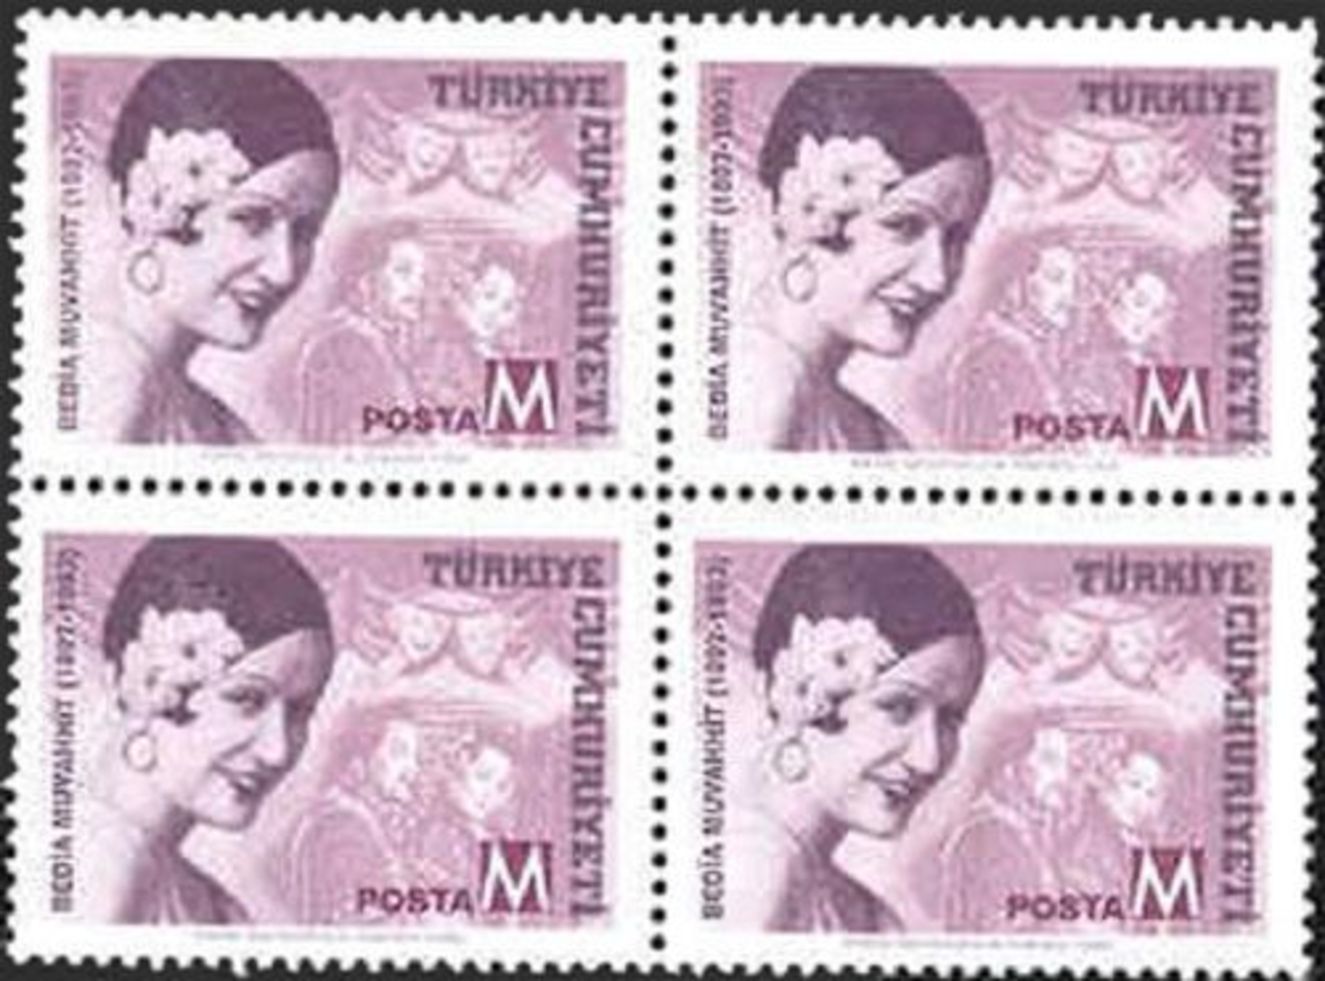 1998'de PTT'nin Türk meşhurları konulu pul serisinde Bedia Muvahhit'in adına posta pulu basıldı.